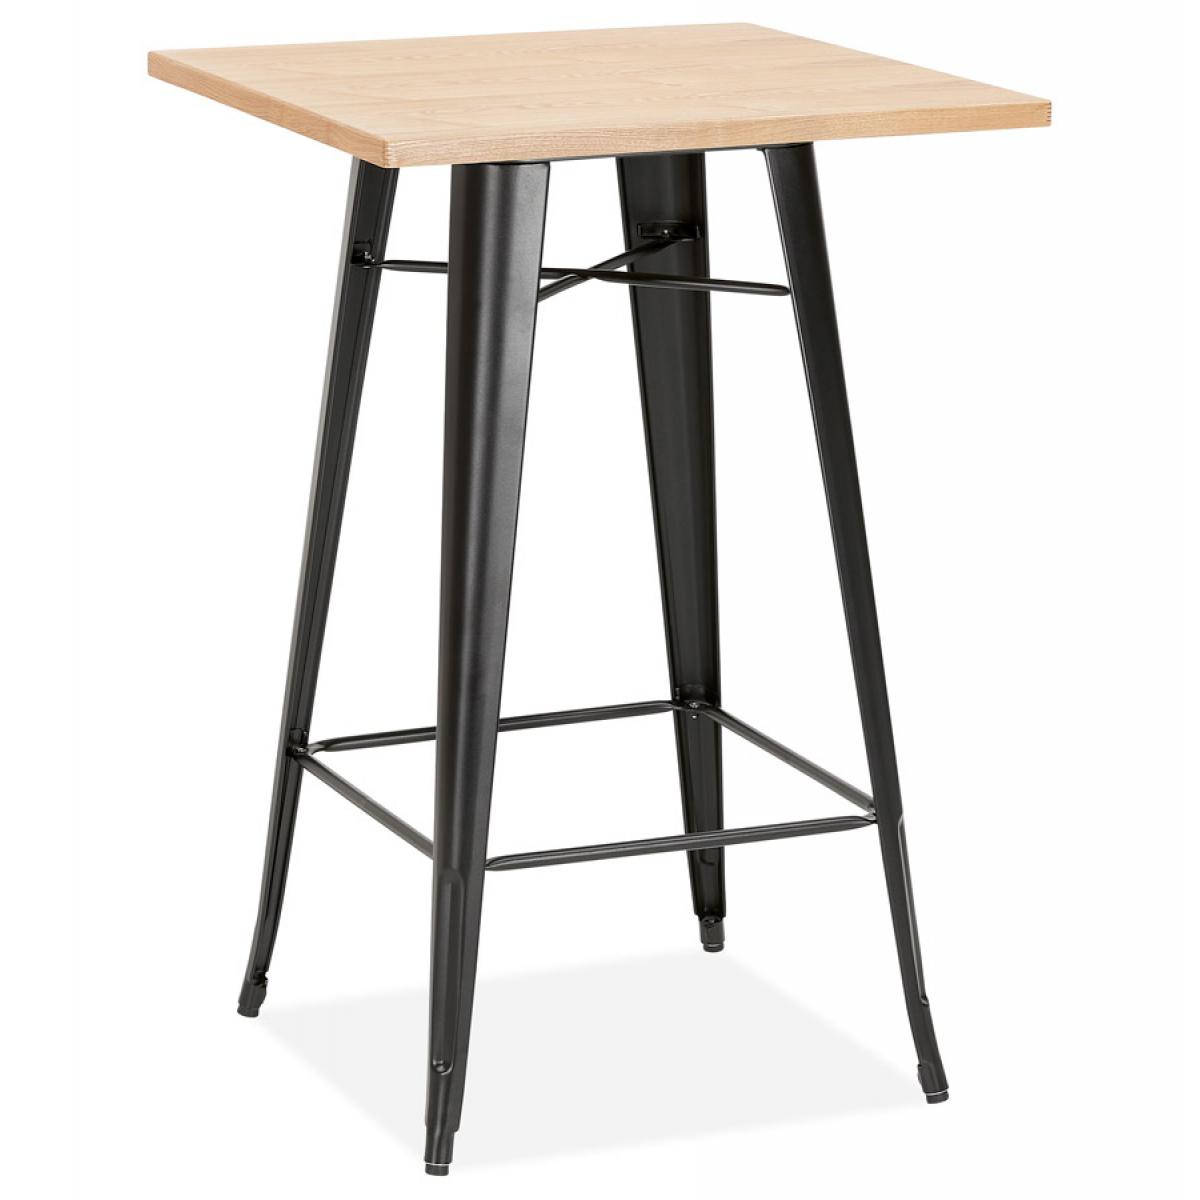 Alterego - Table haute style industriel 'DARIUS' en bois clair et pieds en métal noir - Tables à manger